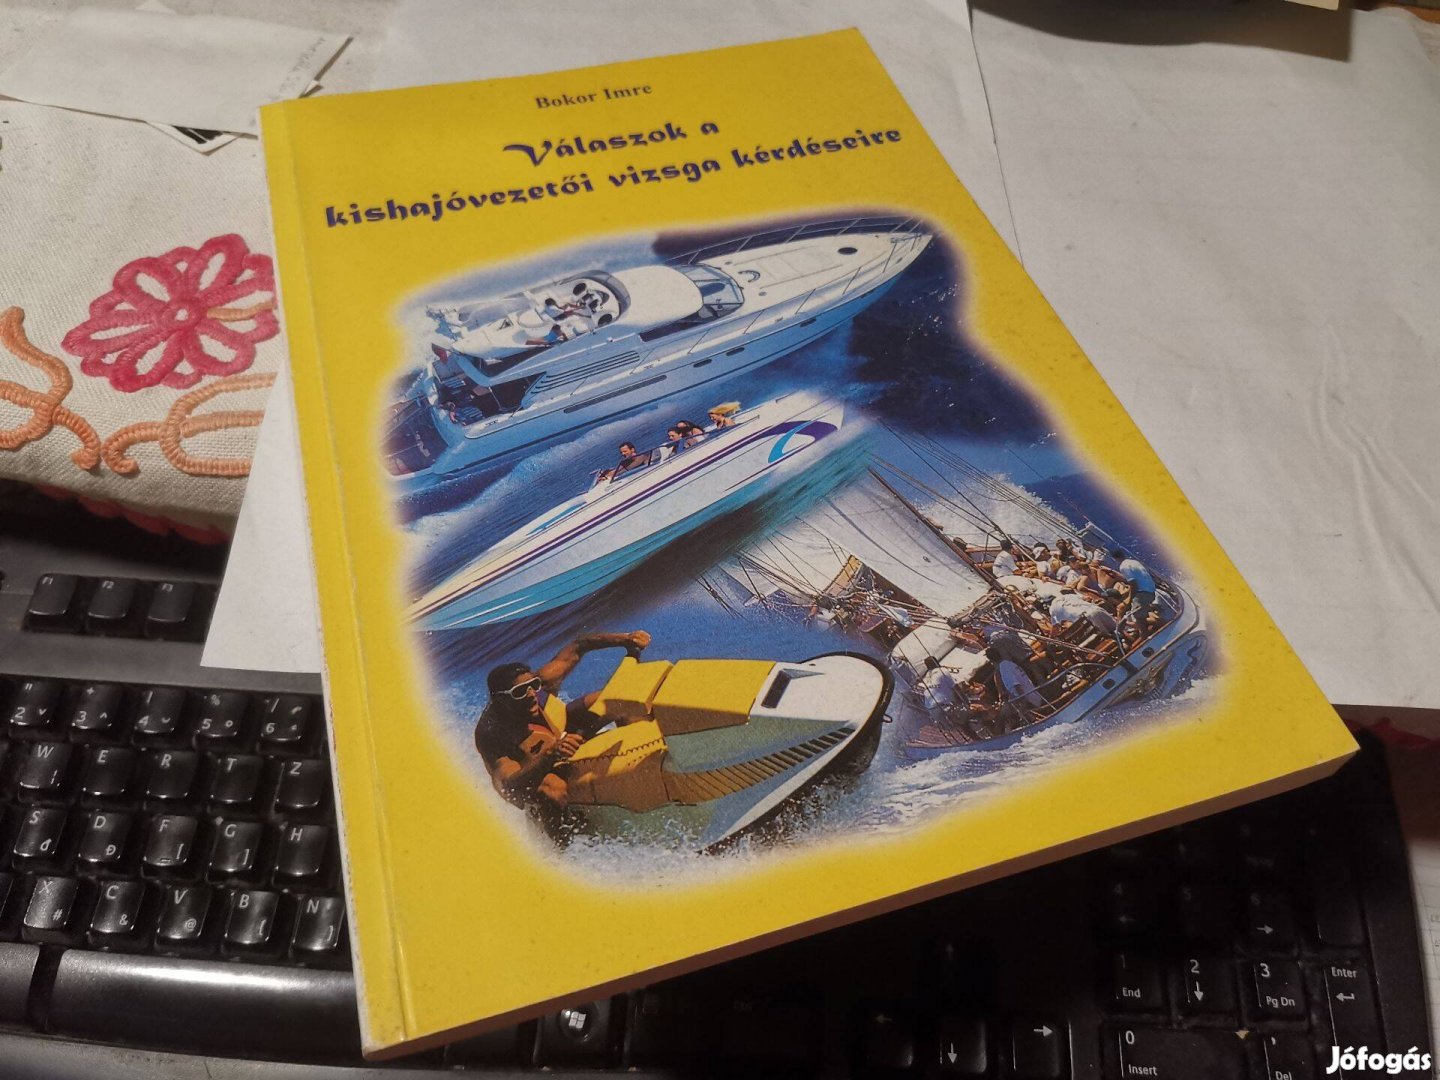 Bokor Imre - Válaszok a kishajóvezetői vizsga kérdéseire - kishajó